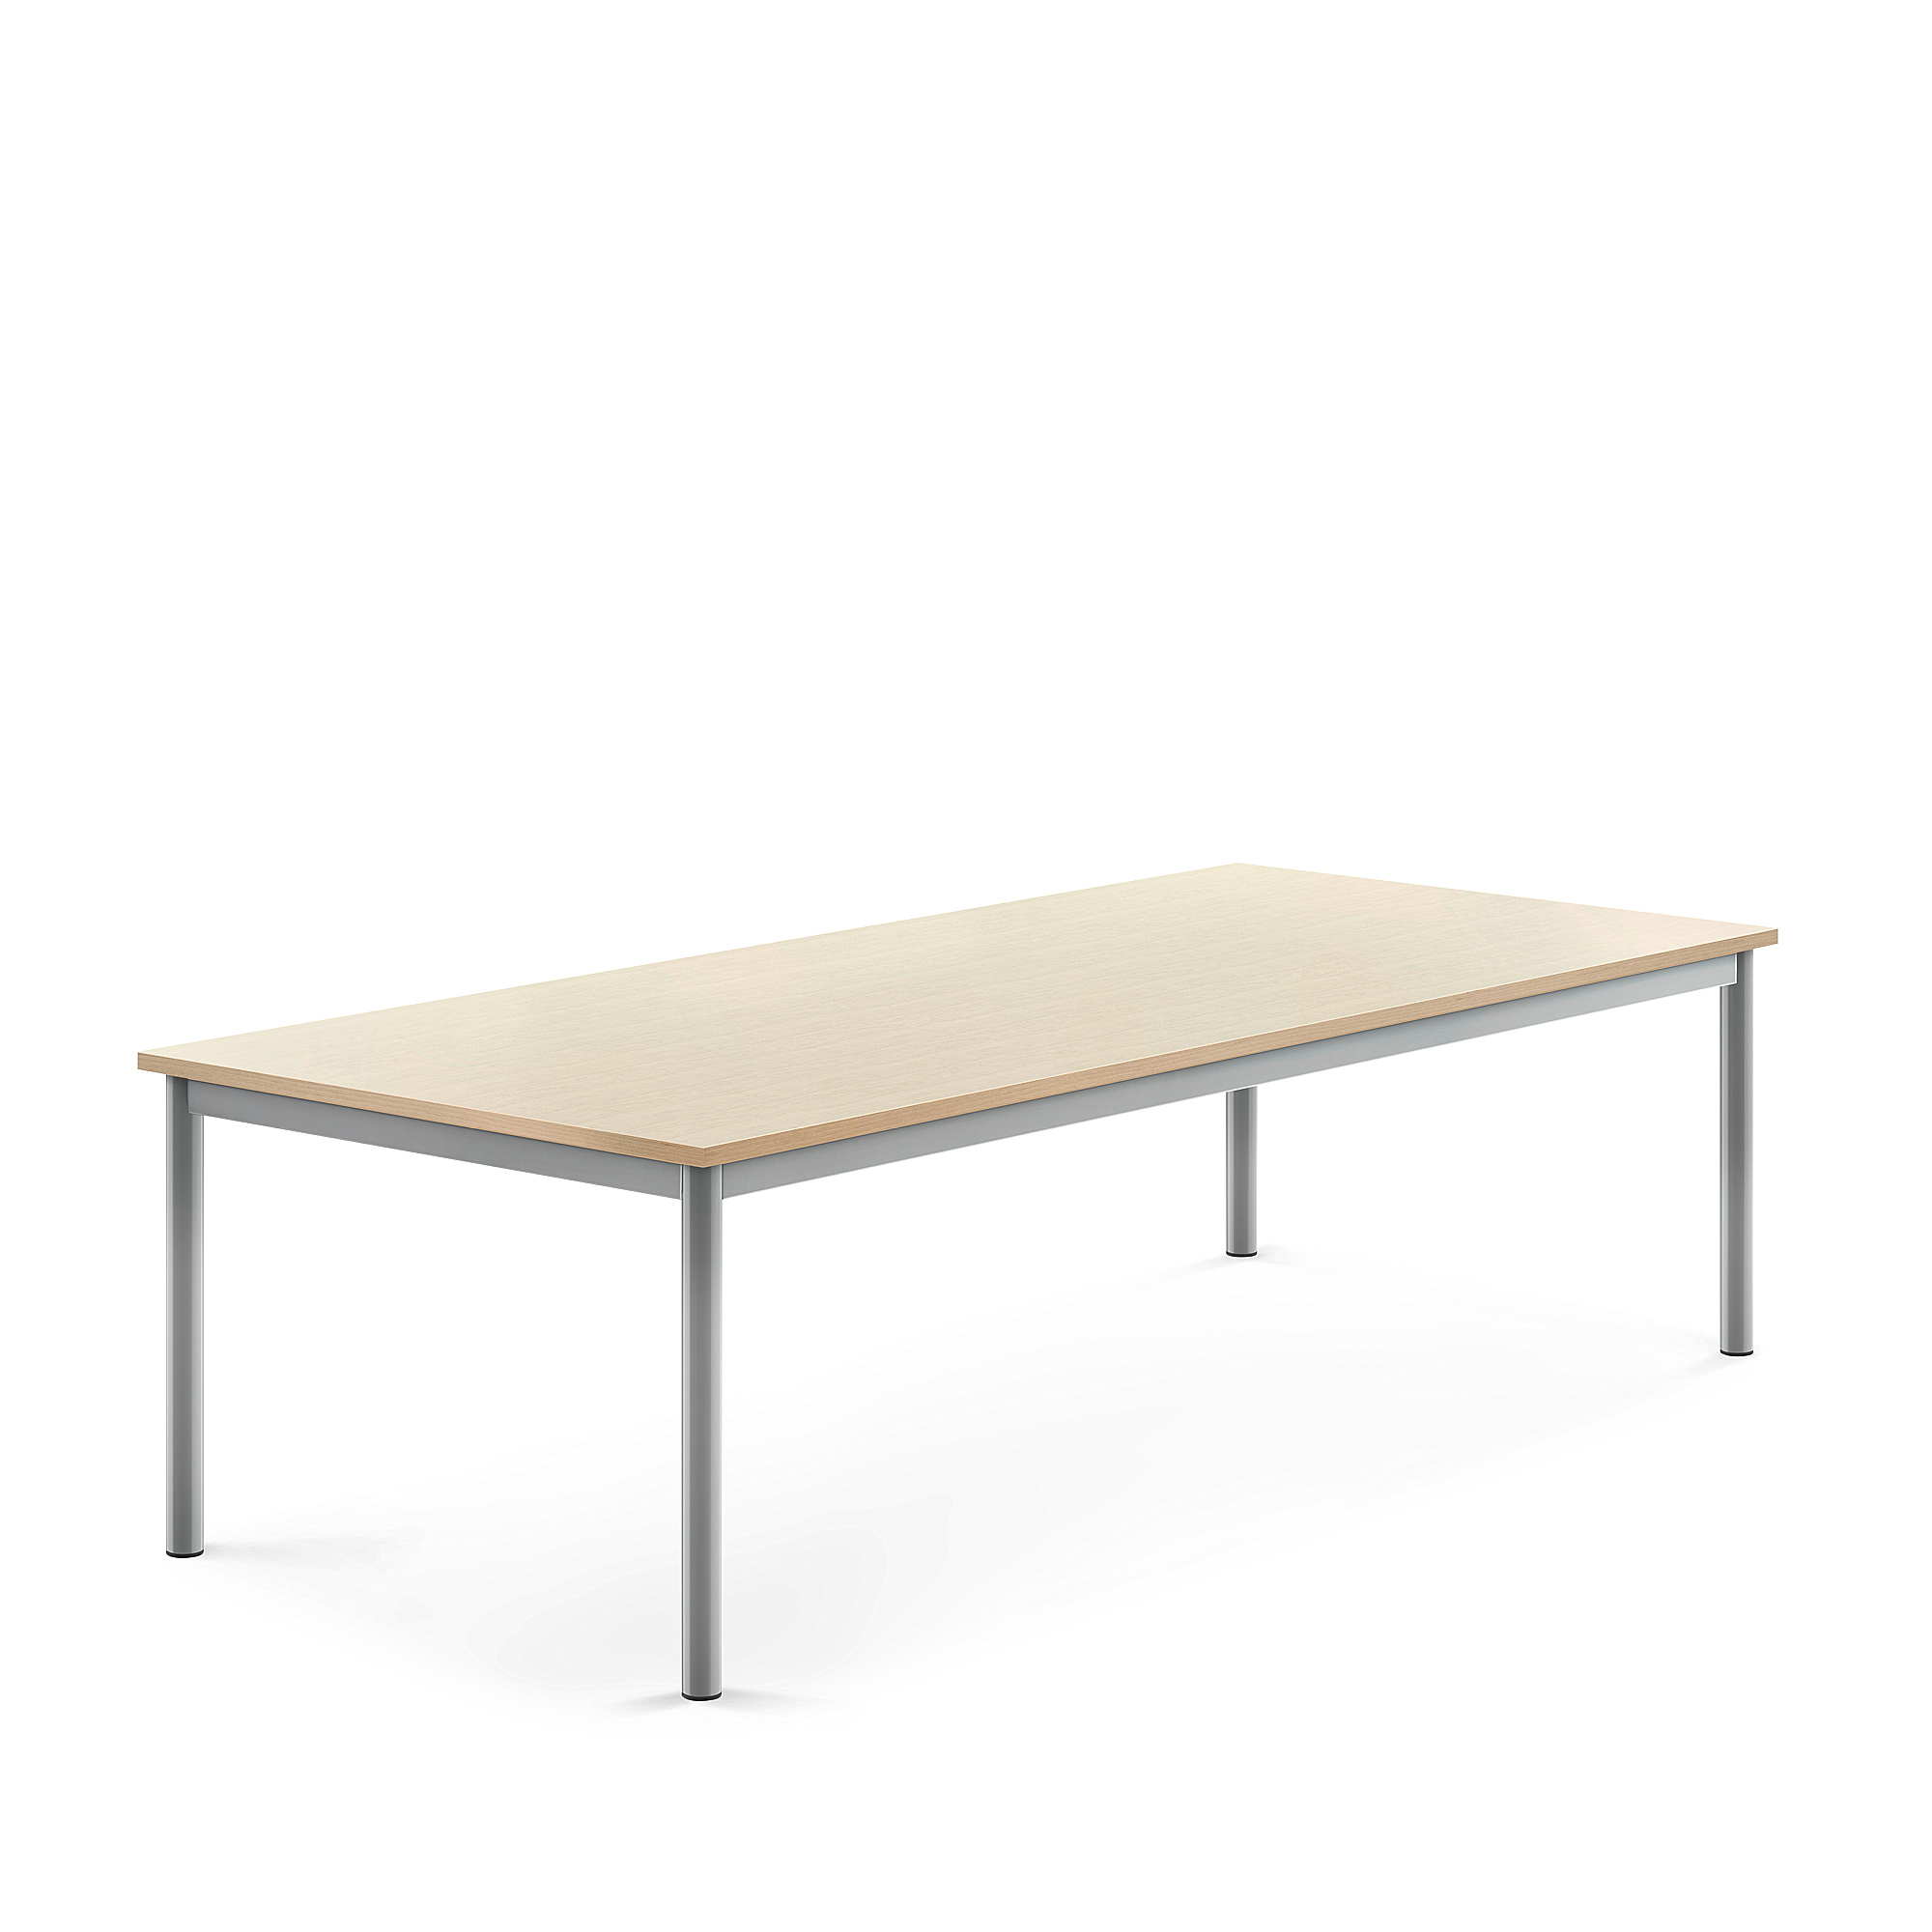 Stůl BORÅS, 1800x800x500 mm, stříbrné nohy, HPL deska, bříza